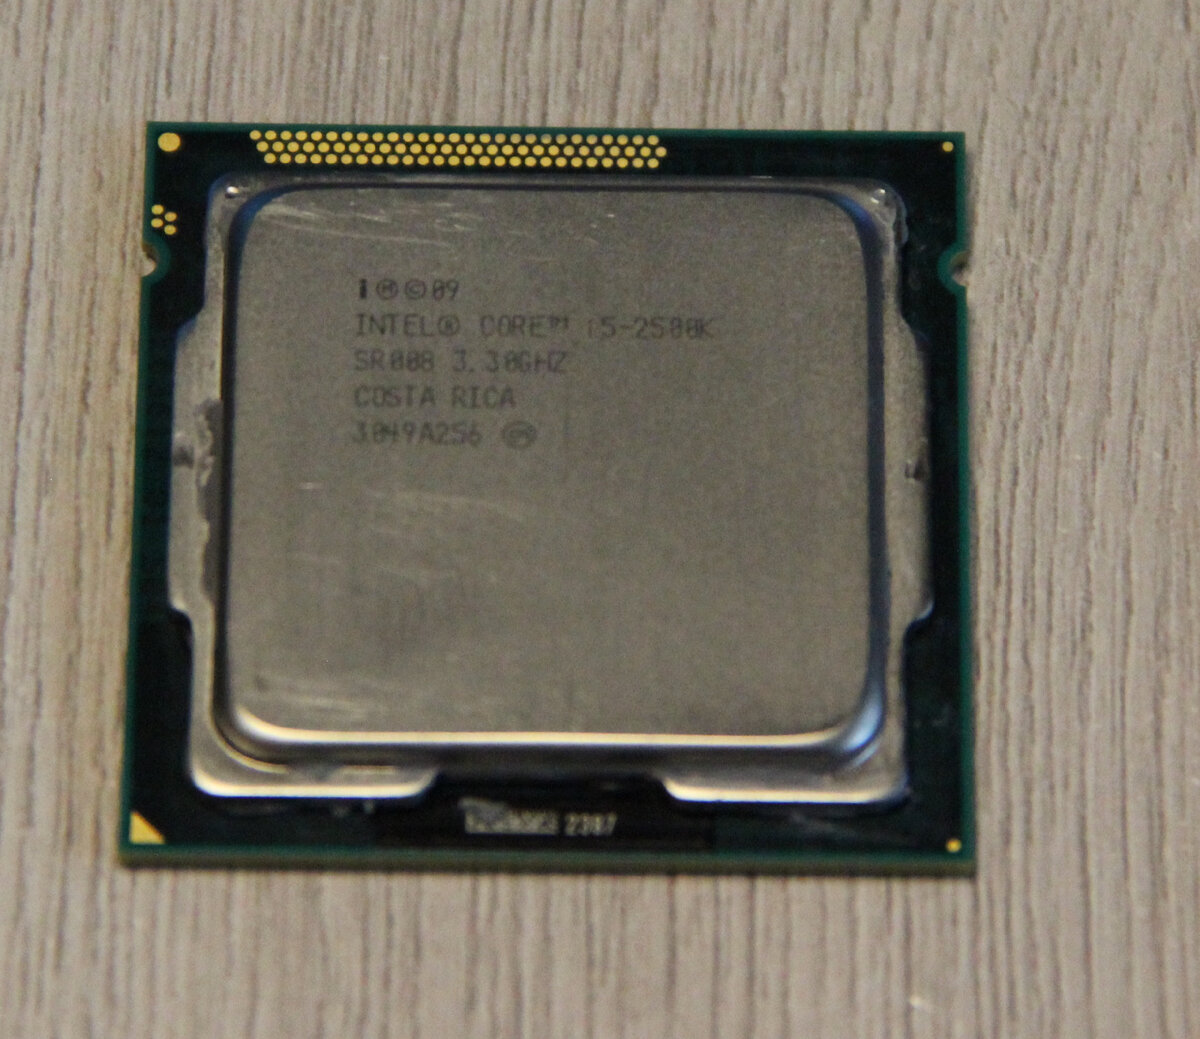 Интел 2500. Intel Core i5-2500k. Скальпирование i5 2500. Intel Core i5-2500 Sandy Bridge lga1155, 4 x 3300 МГЦ. Core i5 2500 Box.